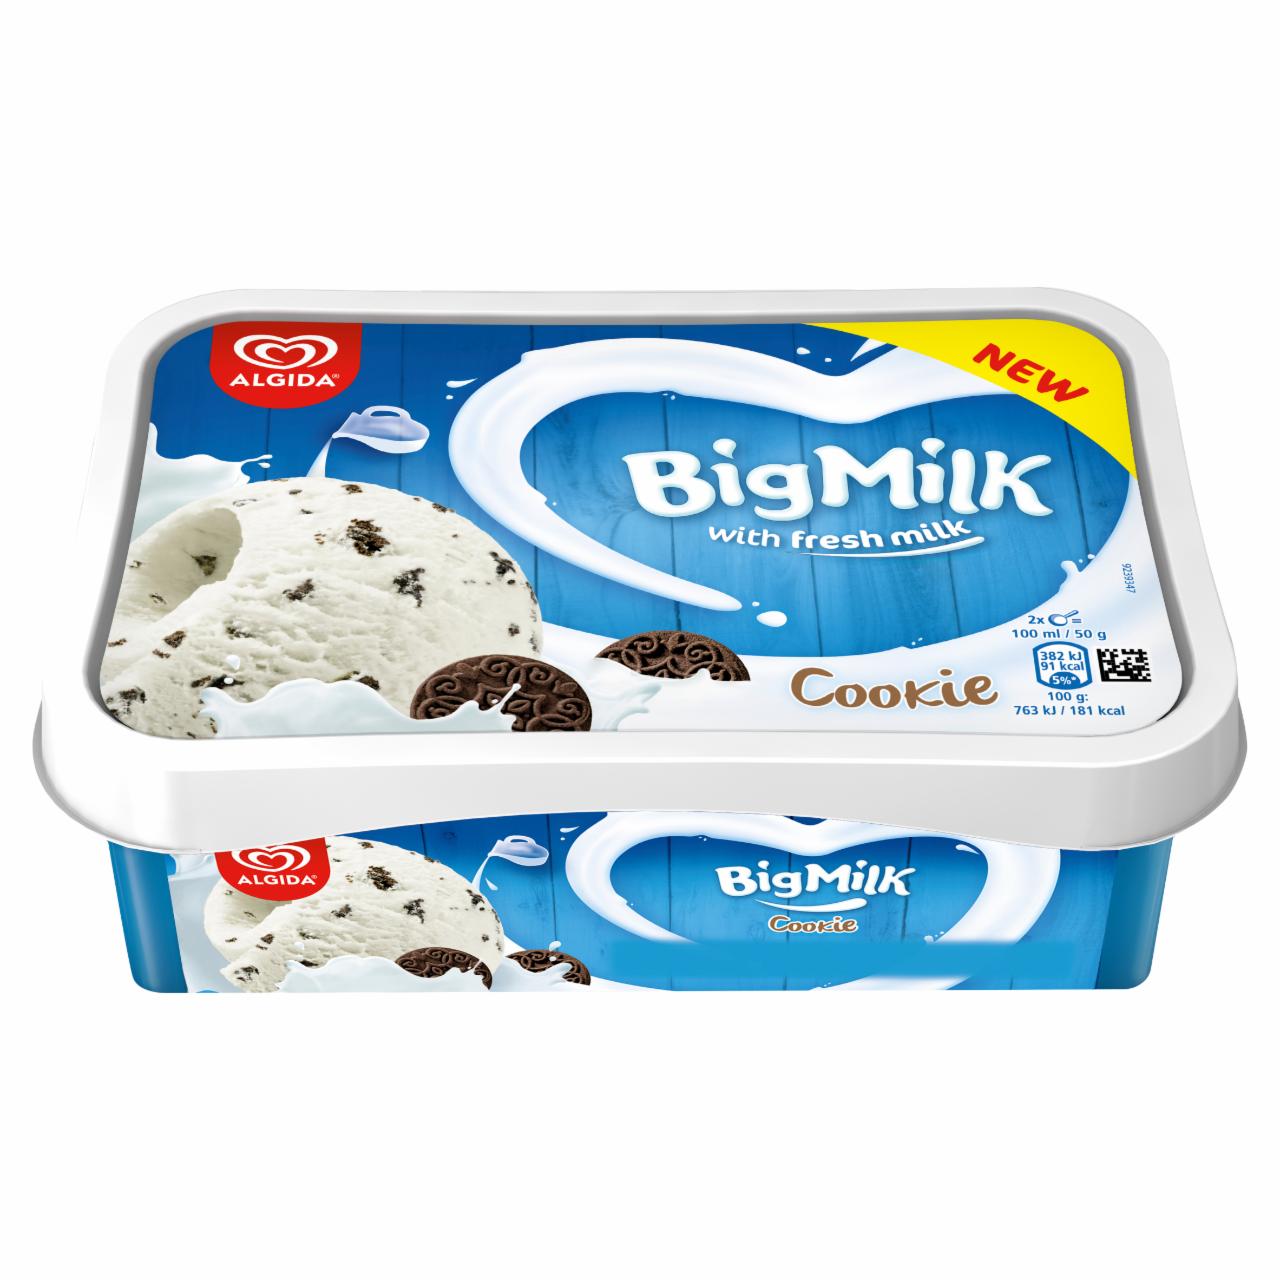 Képek - Big Milk Cookie vanília-tejszín ízű jégkrém kakaós kekszdarabkákkal 1000 ml